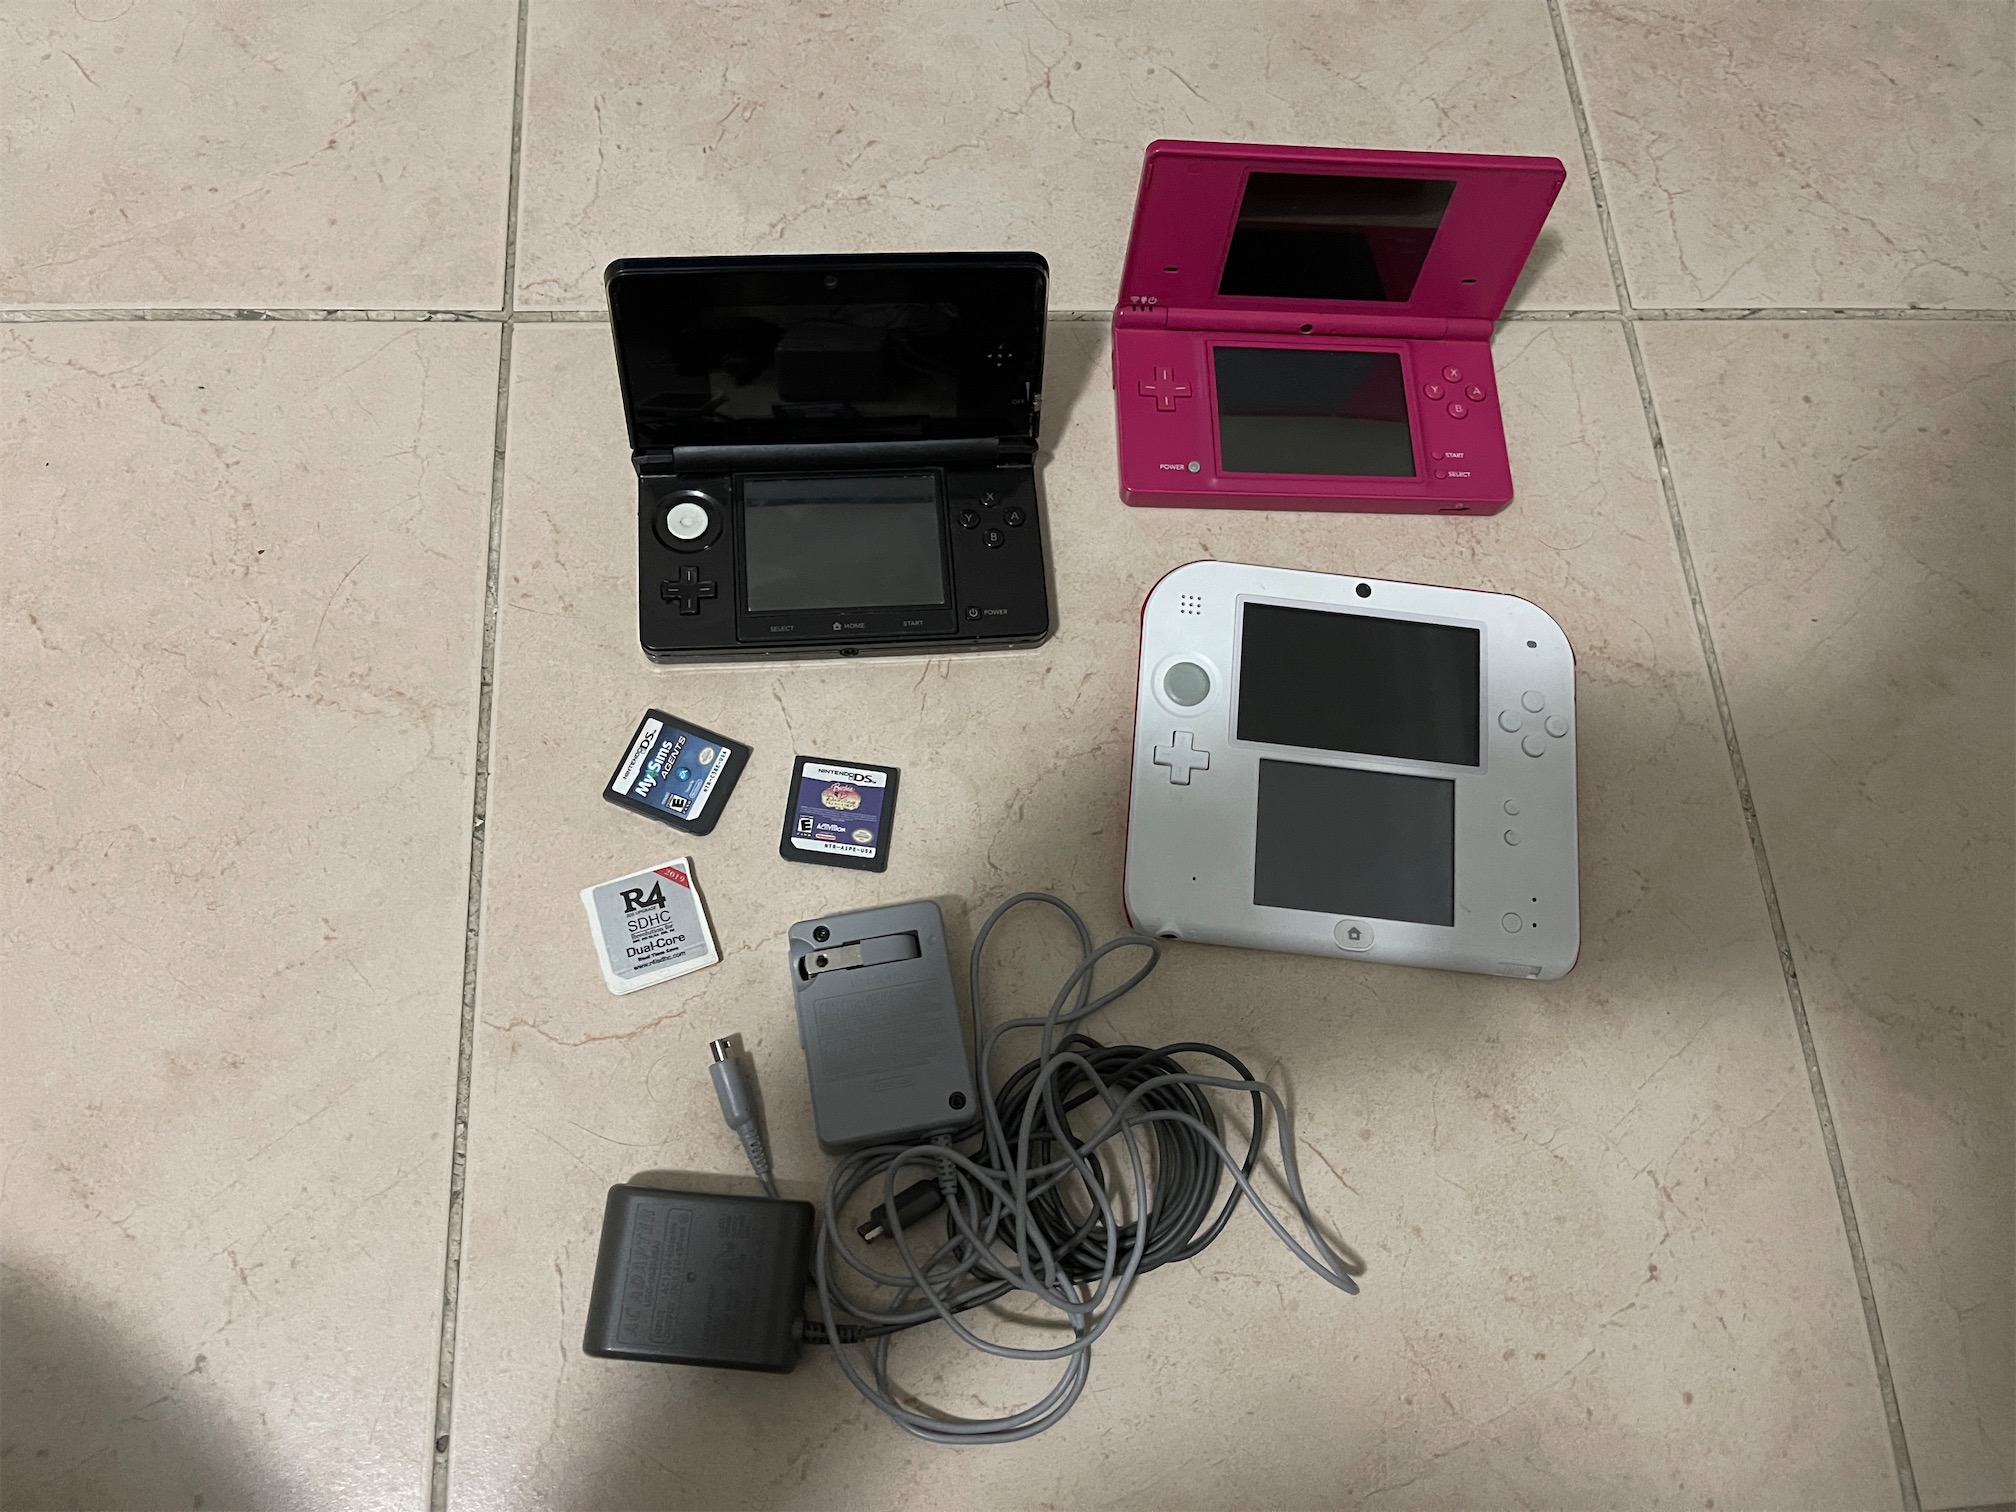 consolas y videojuegos - Nintendo ds, 2ds y 3ds